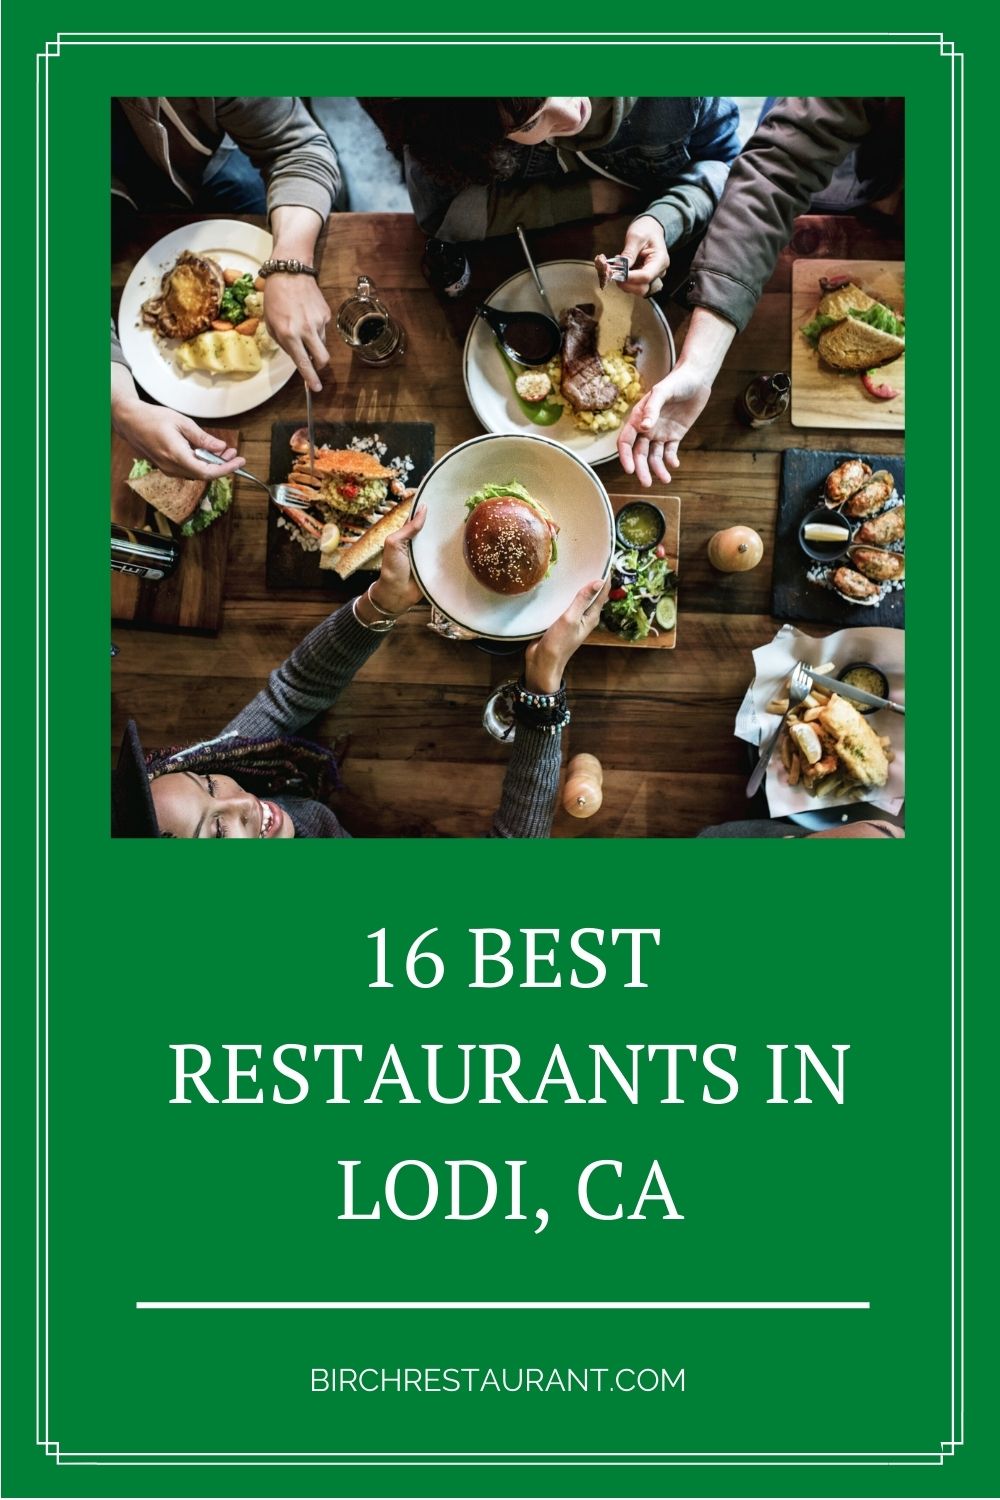 Best Restaurants in Lodi